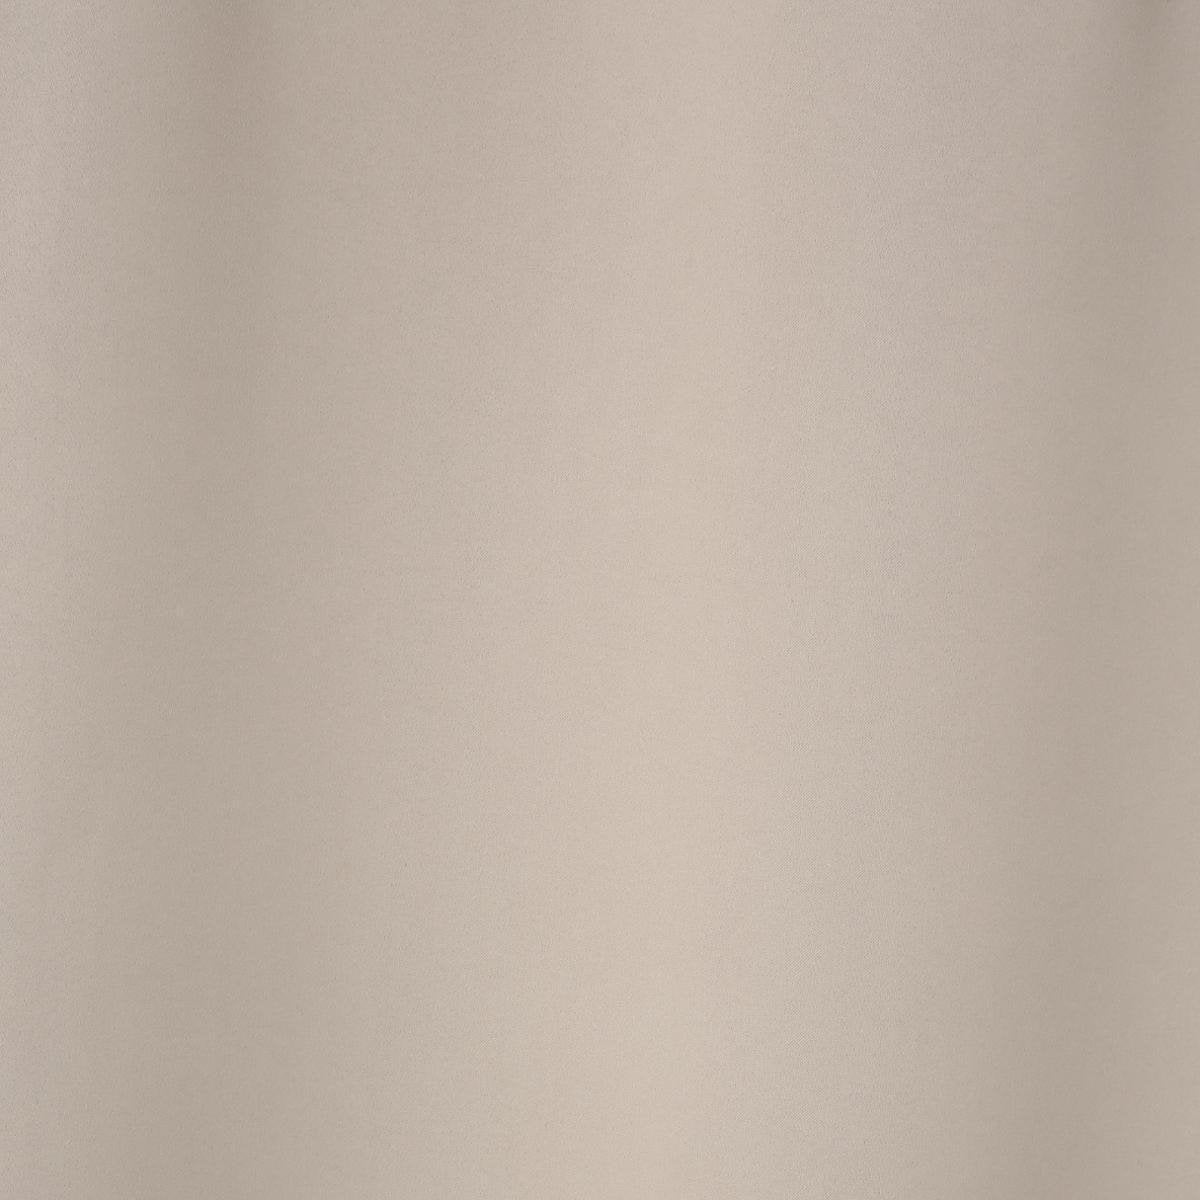 Atmosphera set van 2 Linnen verduisteringsgordijnen 135x240cm - Kant en klaar met ringen - Gordijn raambekleding - 2 stuks beige